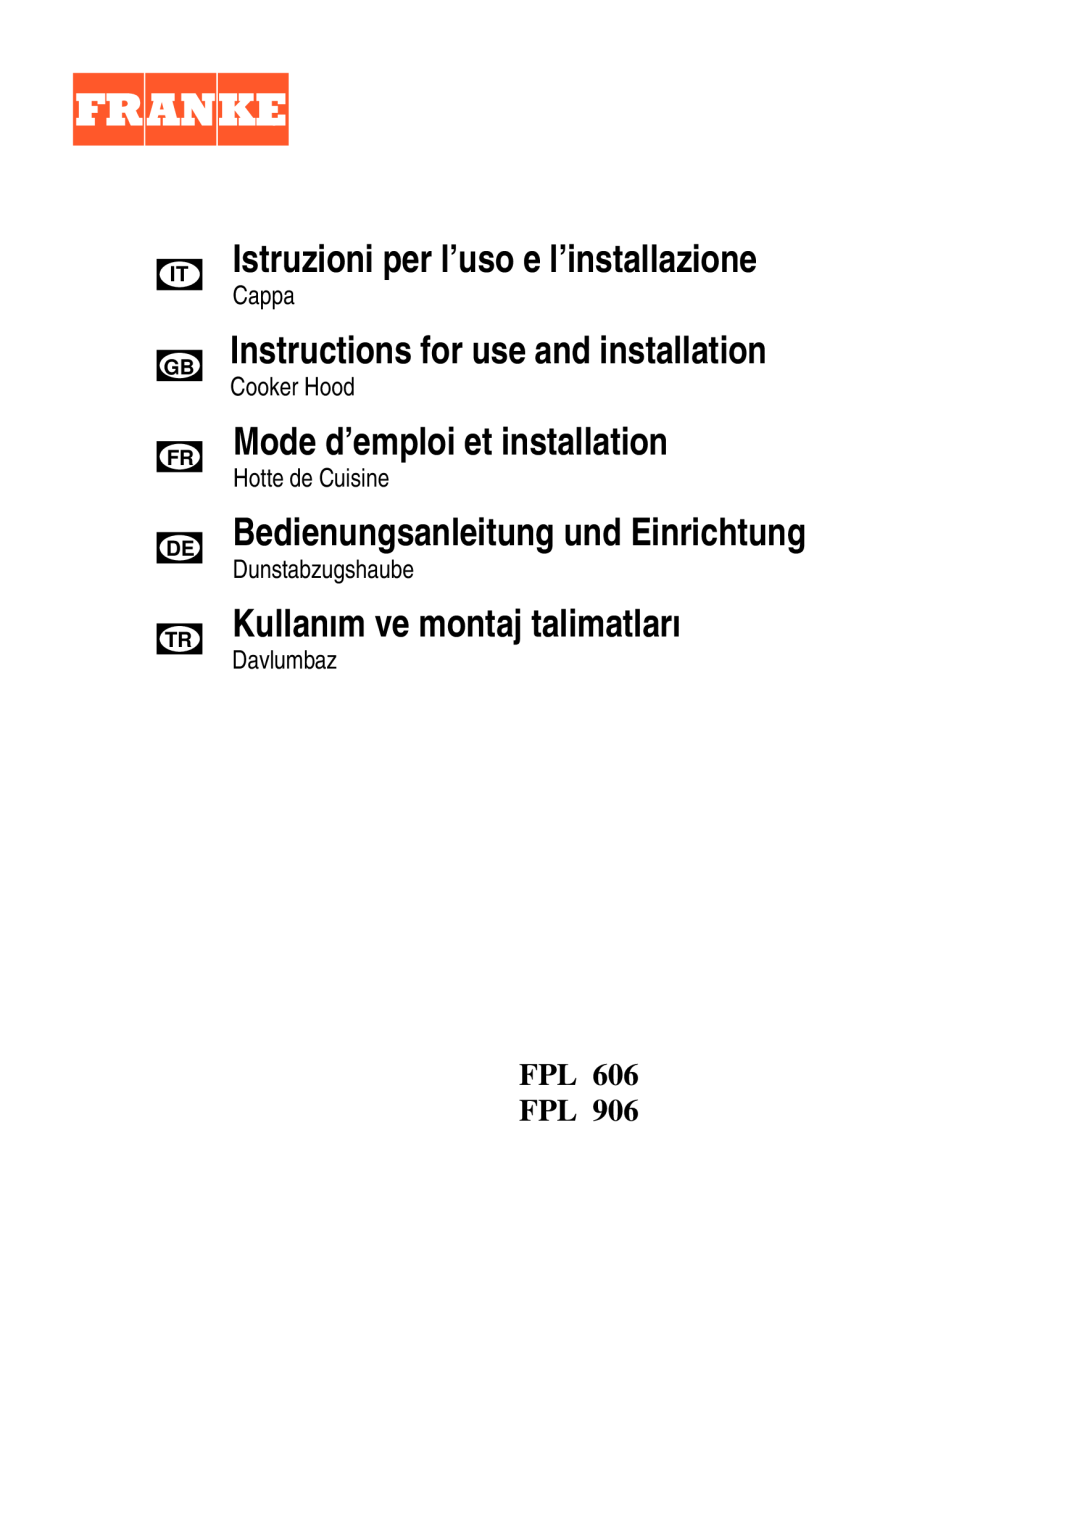 Franke Consumer Products FPL 906 manual Istruzioni per l’uso e l’installazione, Instructions for use and installation 